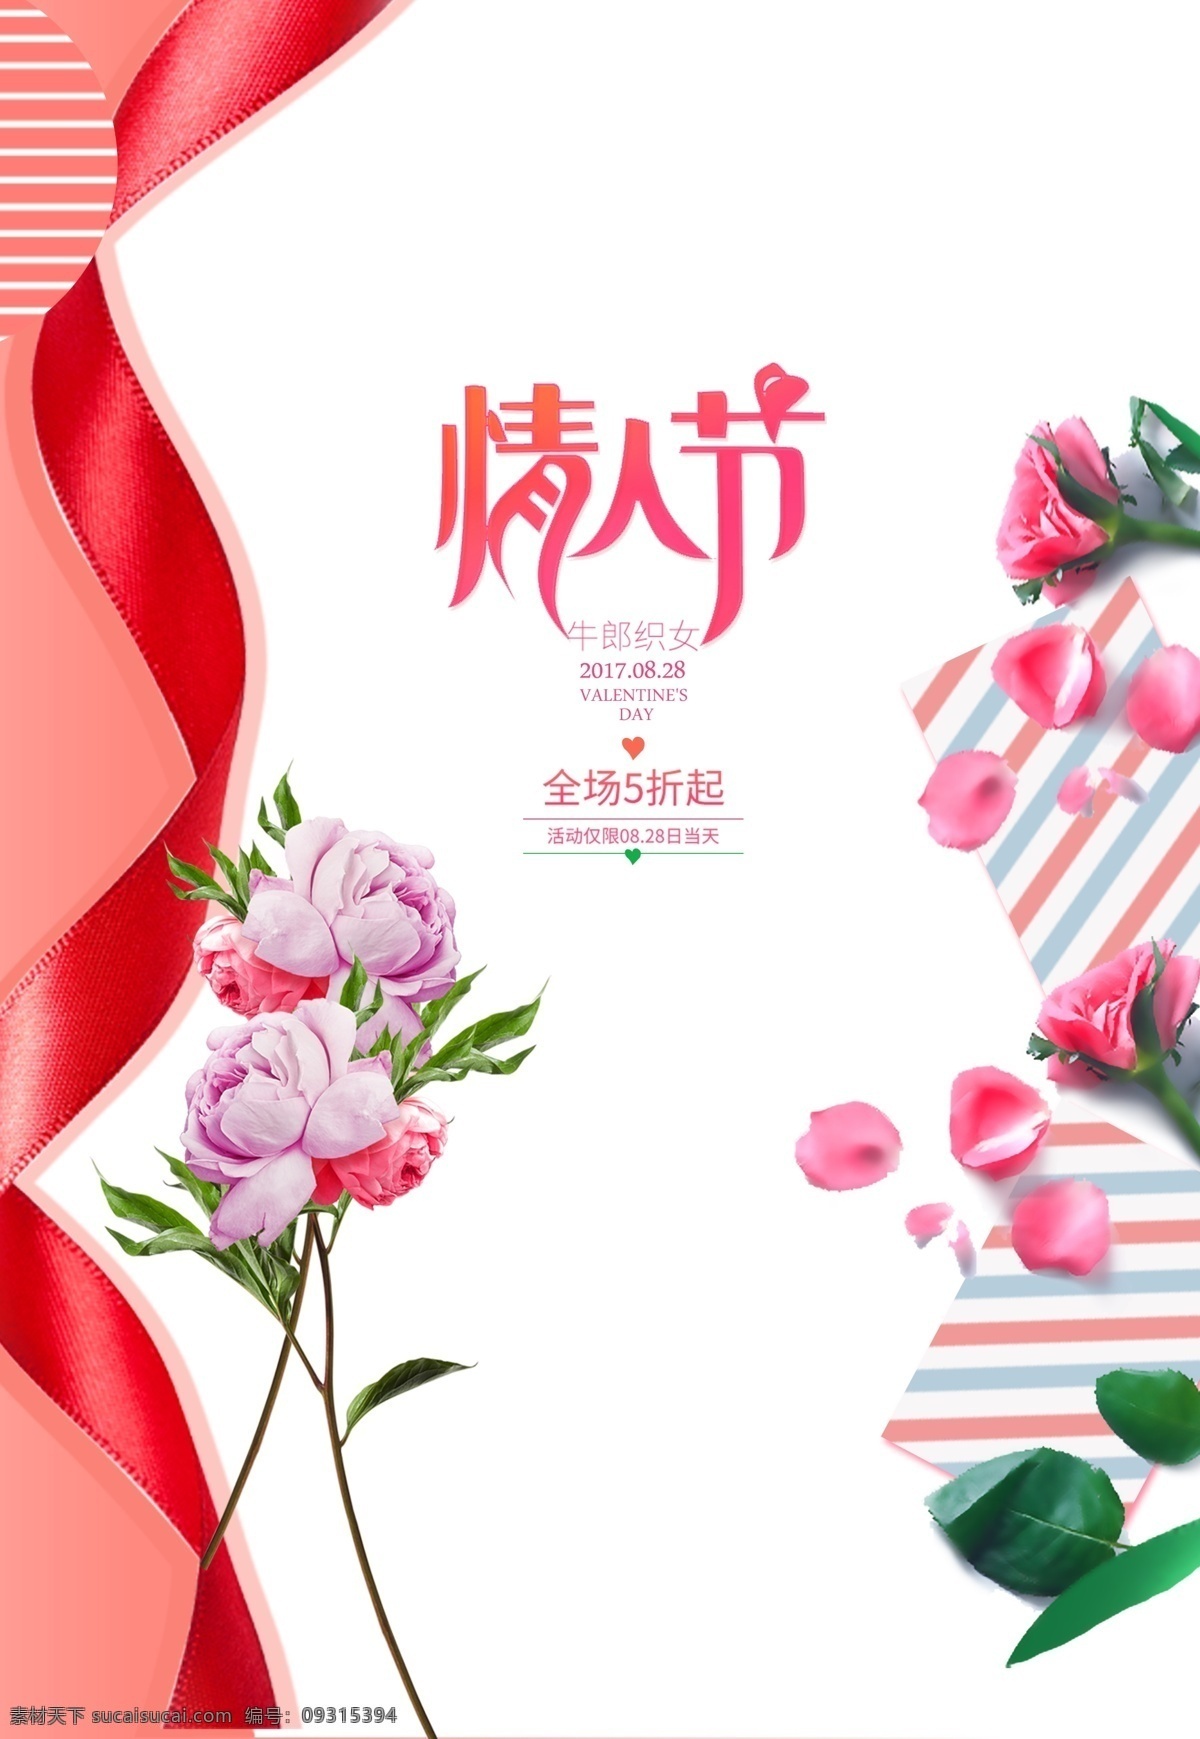 红色 精美 七夕 情人节 海报 模板 促销 宣传海报 宣传 中国情人节 七夕海报